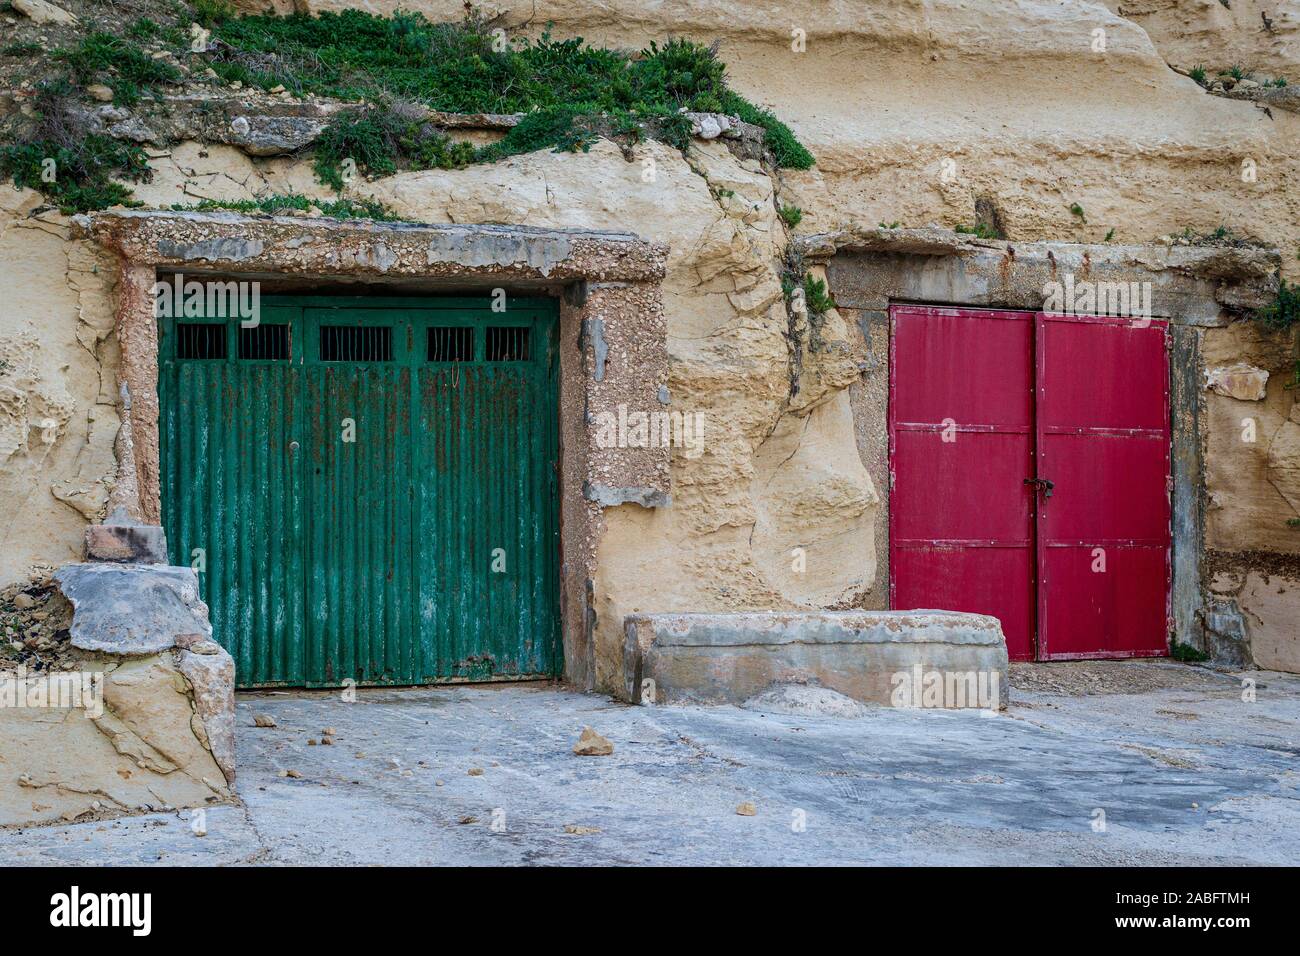 Das Fischerdorf Dahlet Qorrot auf der Insel Gozo, Malta. Bootshaus aus den weichen Kalkstein Klippe. Grün und rot Holz lackiert Türen. Stockfoto